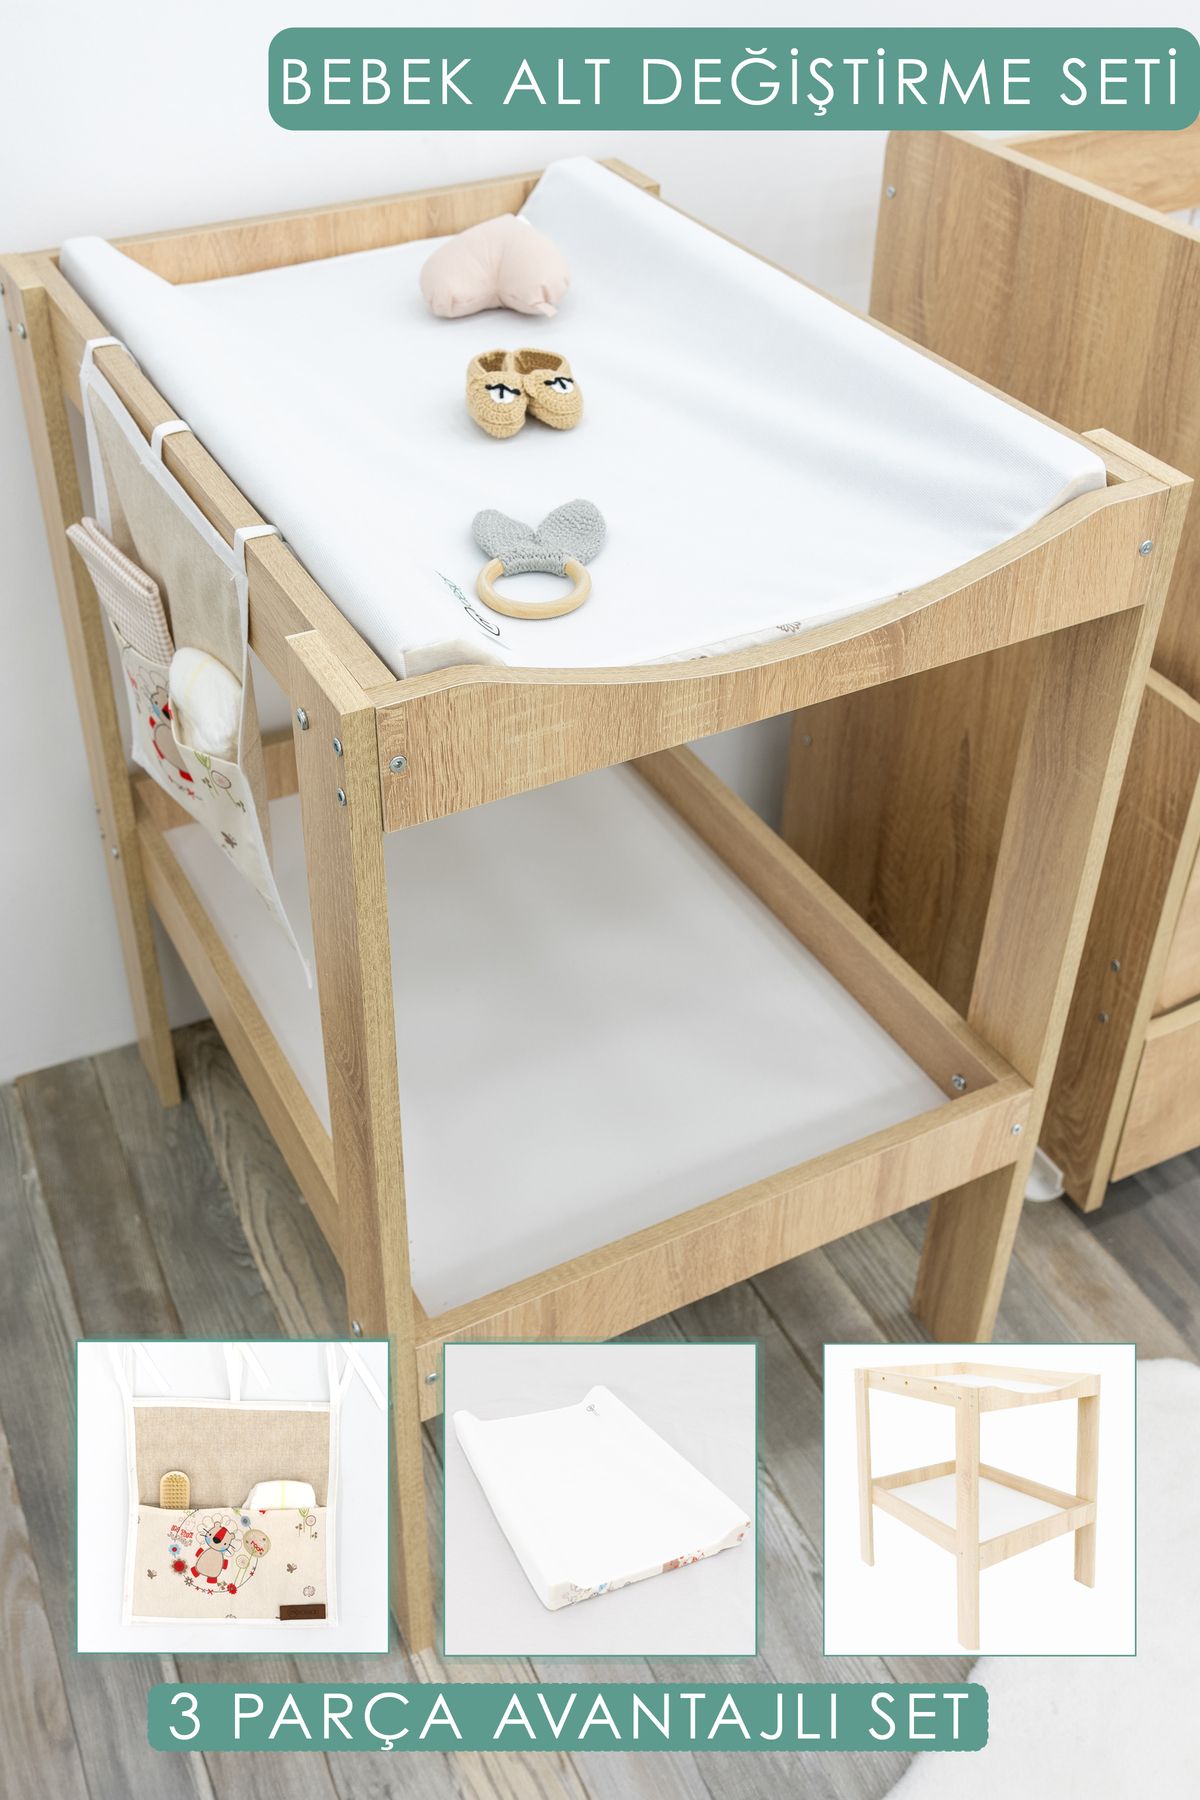 mordesign Bebek; 3'lü Avantajlı Set, Bebek Alt Değiştirme Masası; pedi, bağlamalı Organizer, Daisy, Kahve